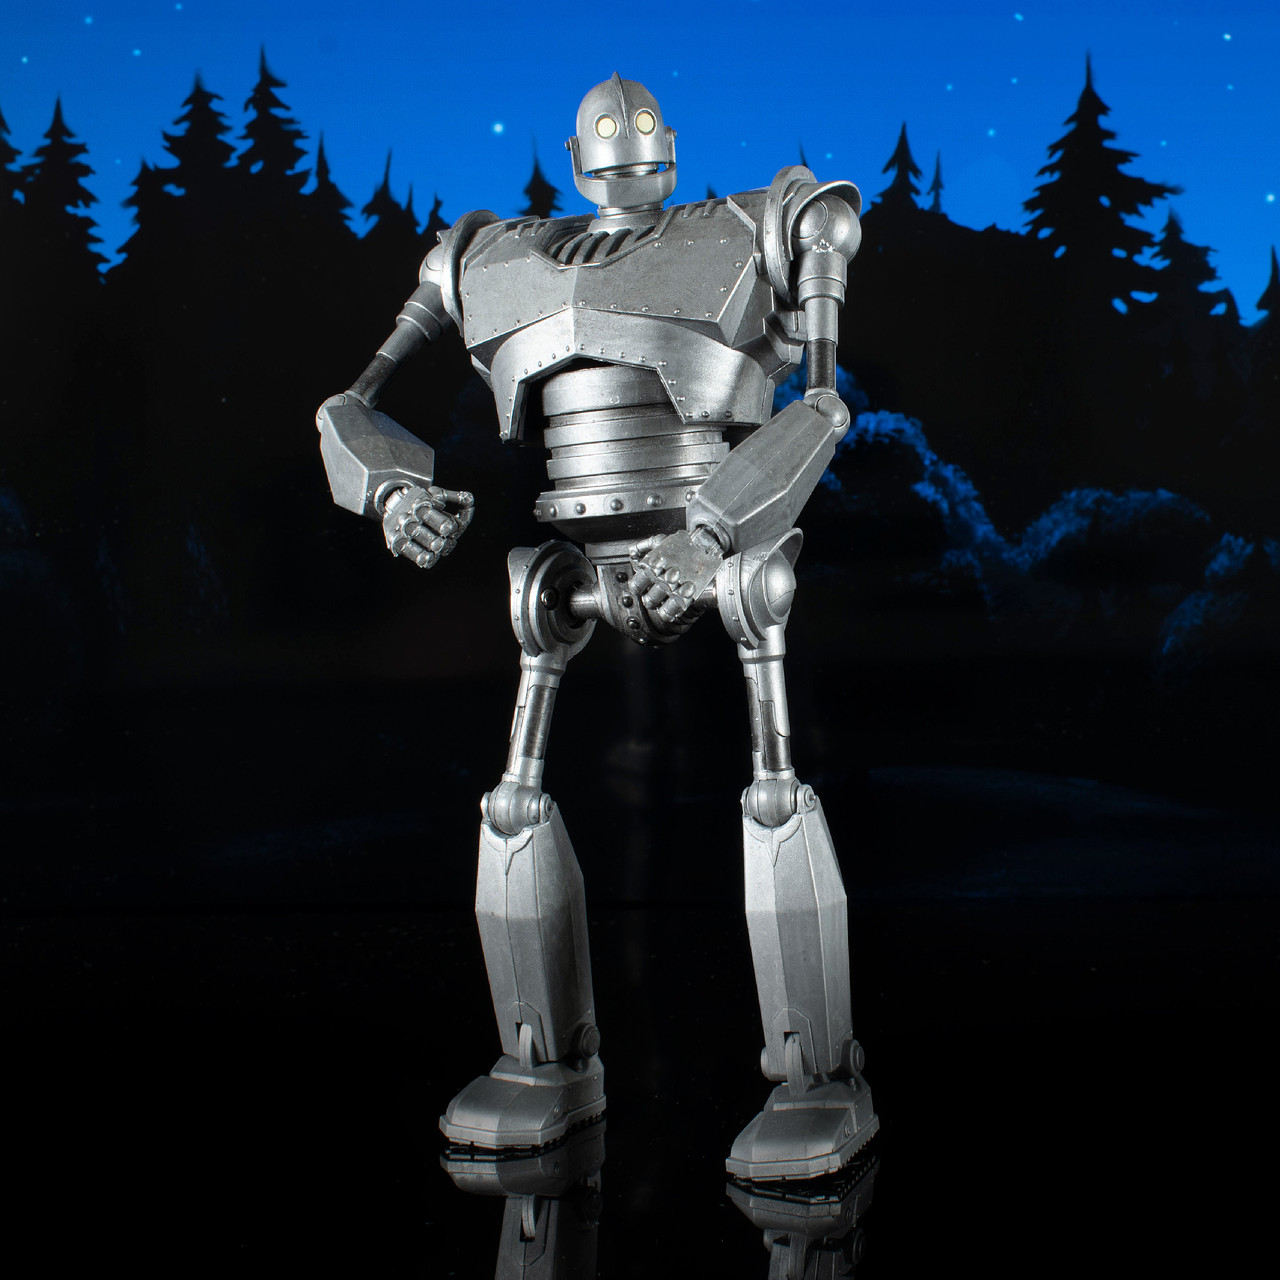 Iron Giant (Metallic) Select Action Figure